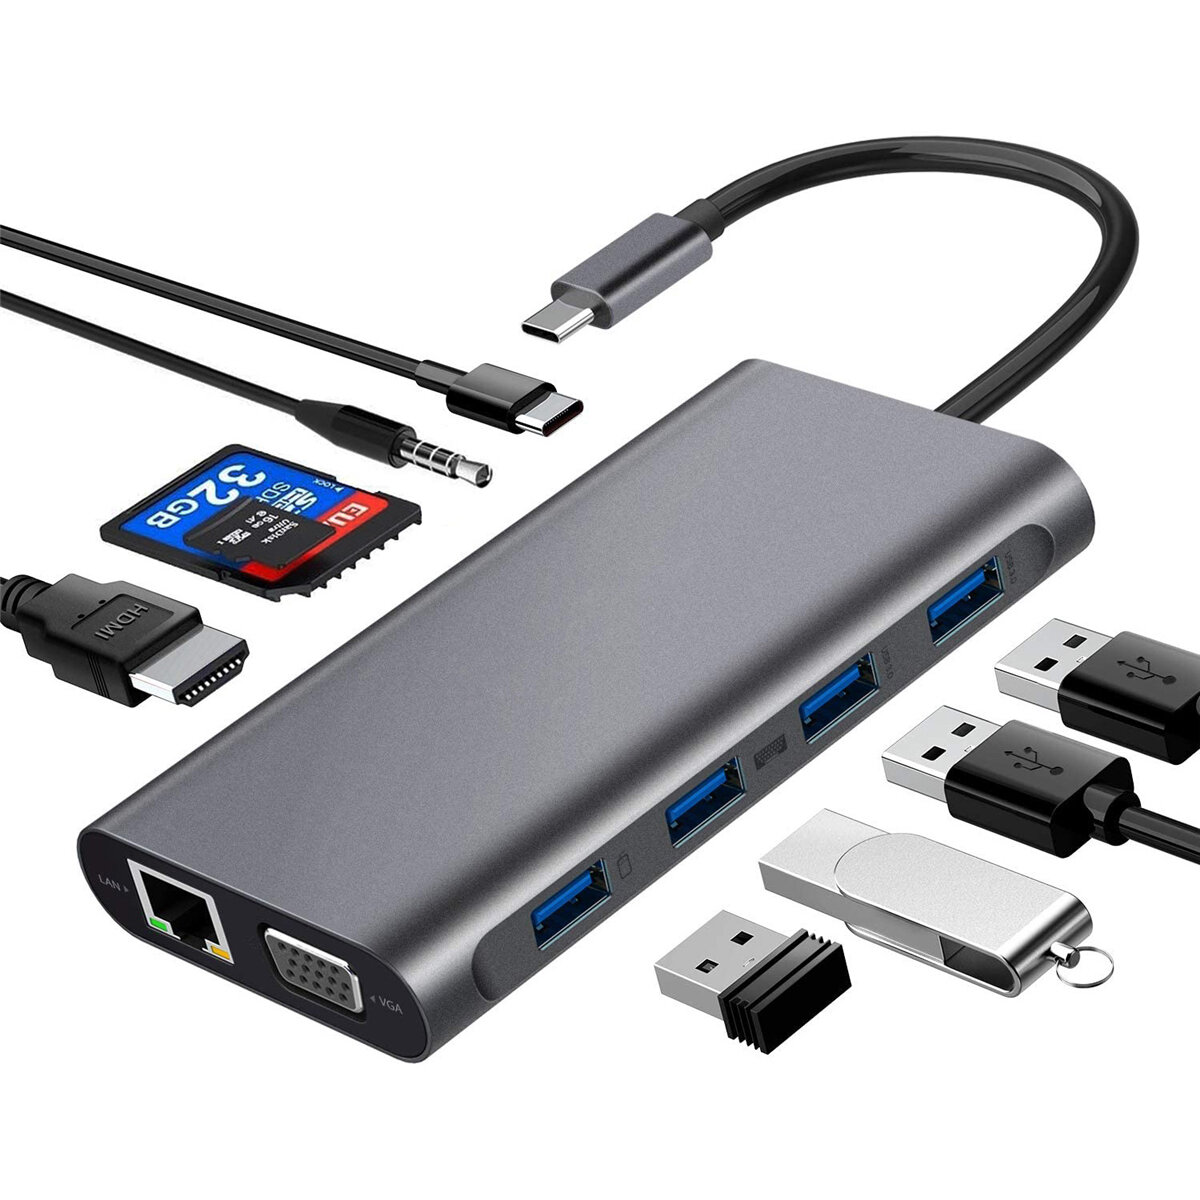 

Bakeey Type-c 11 в 1 док-станции с портом USB 3.0 * 4/RJ45 / VGA / HDMI / PD / TF / SD / 3.5 Быстрая зарядка для ноутбук